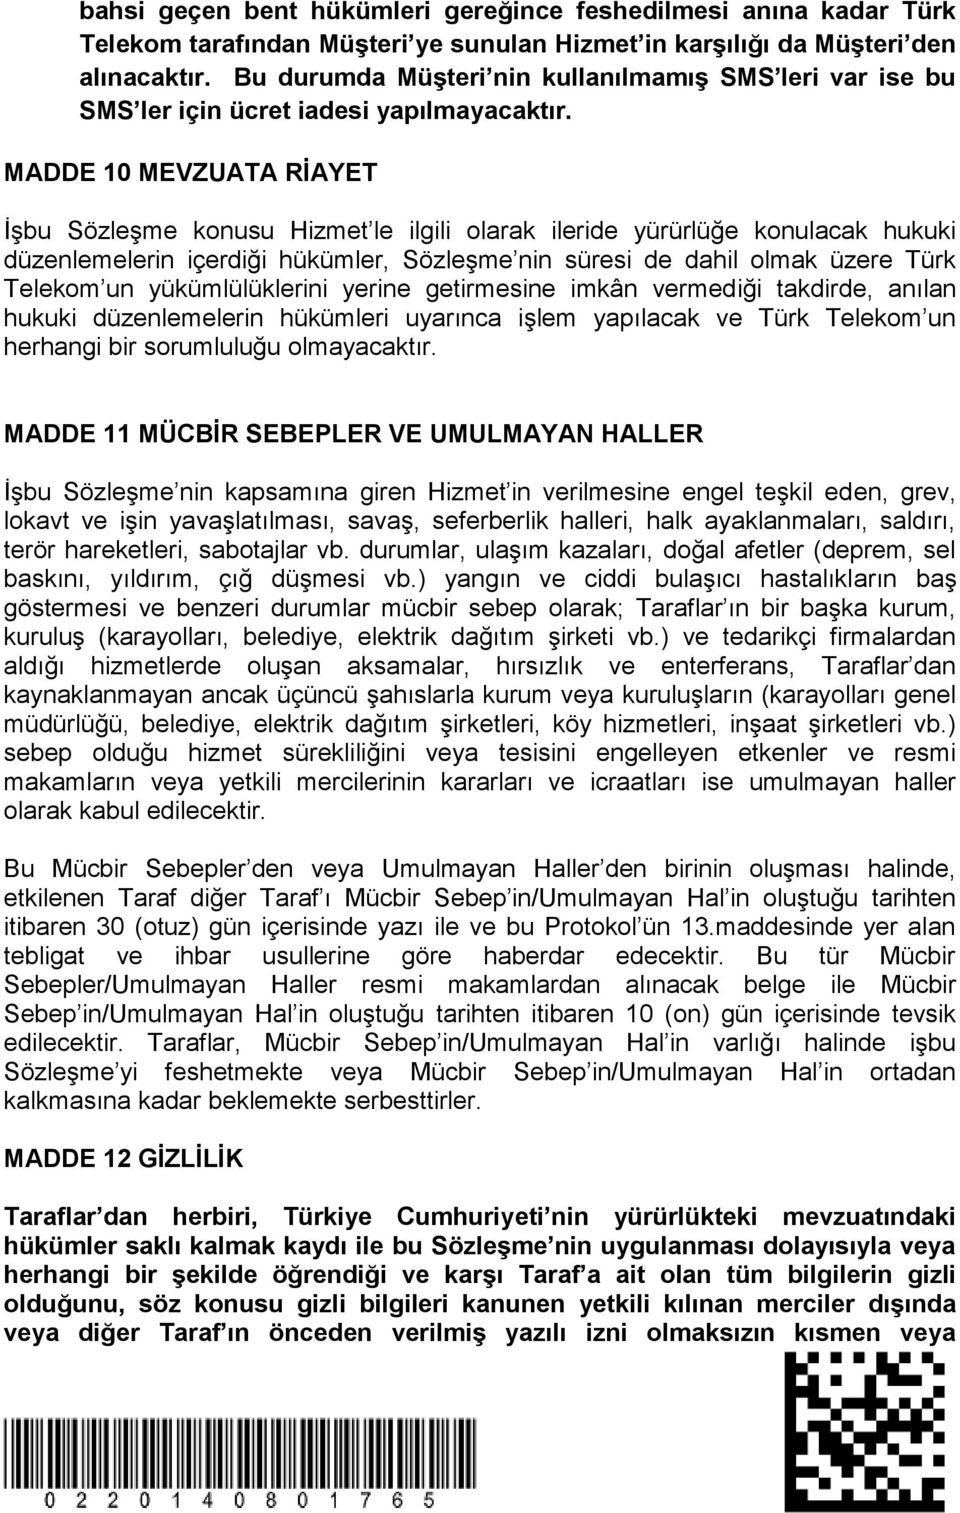 MADDE 10 MEVZUATA RİAYET İşbu Sözleşme konusu Hizmet le ilgili olarak ileride yürürlüğe konulacak hukuki düzenlemelerin içerdiği hükümler, Sözleşme nin süresi de dahil olmak üzere Türk Telekom un